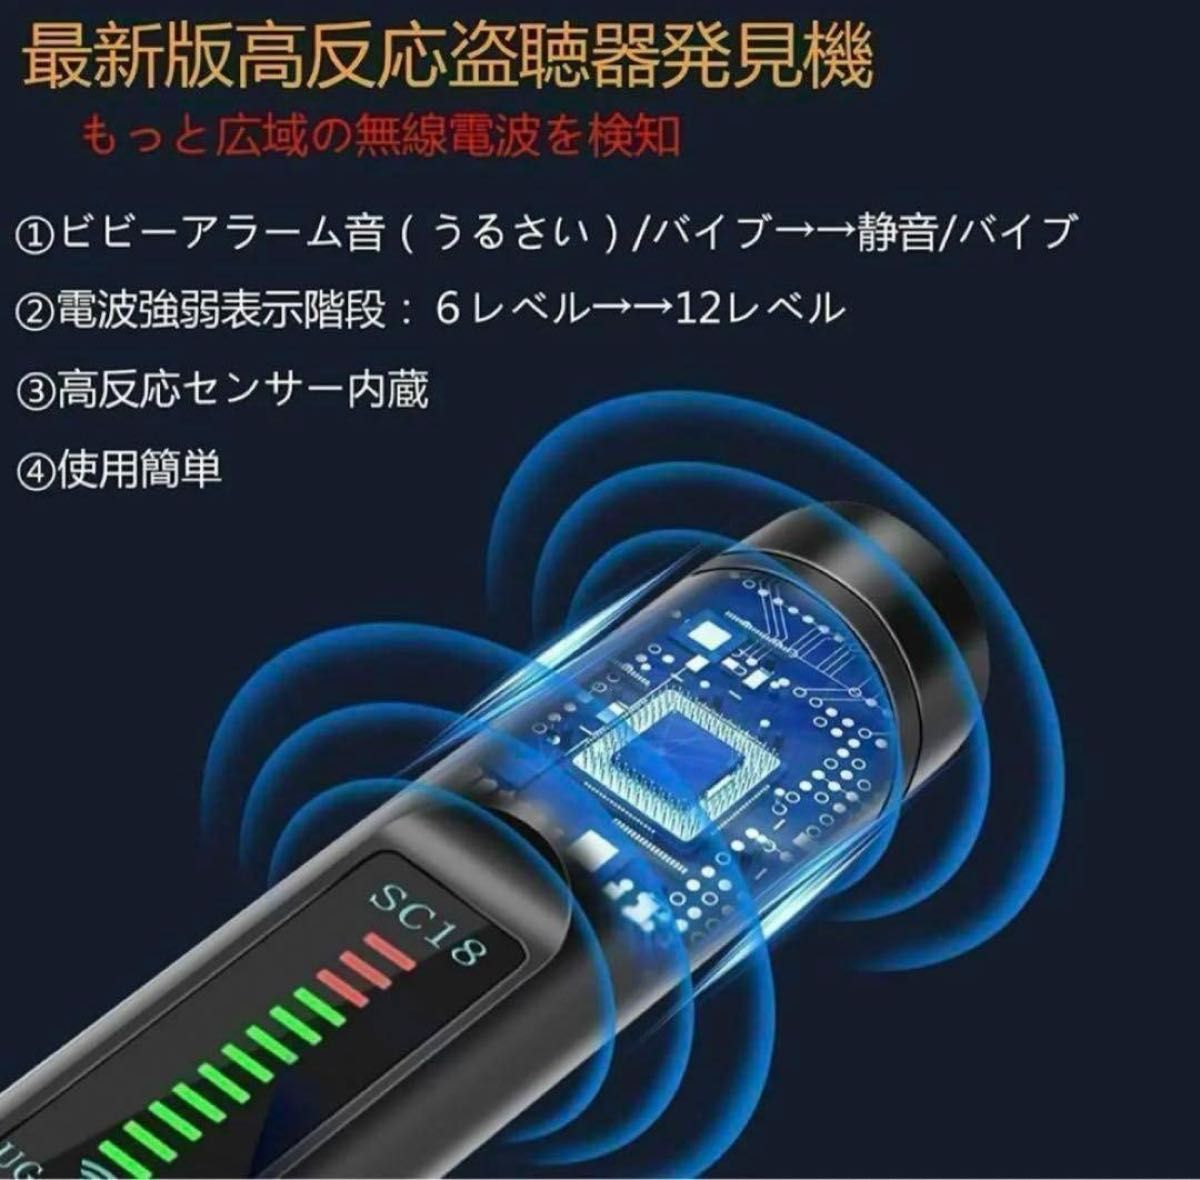 盗聴器発見機 発見器 探知機 防犯 GPS 盗撮 カメラWi-Fi 1 防犯対策 護身用